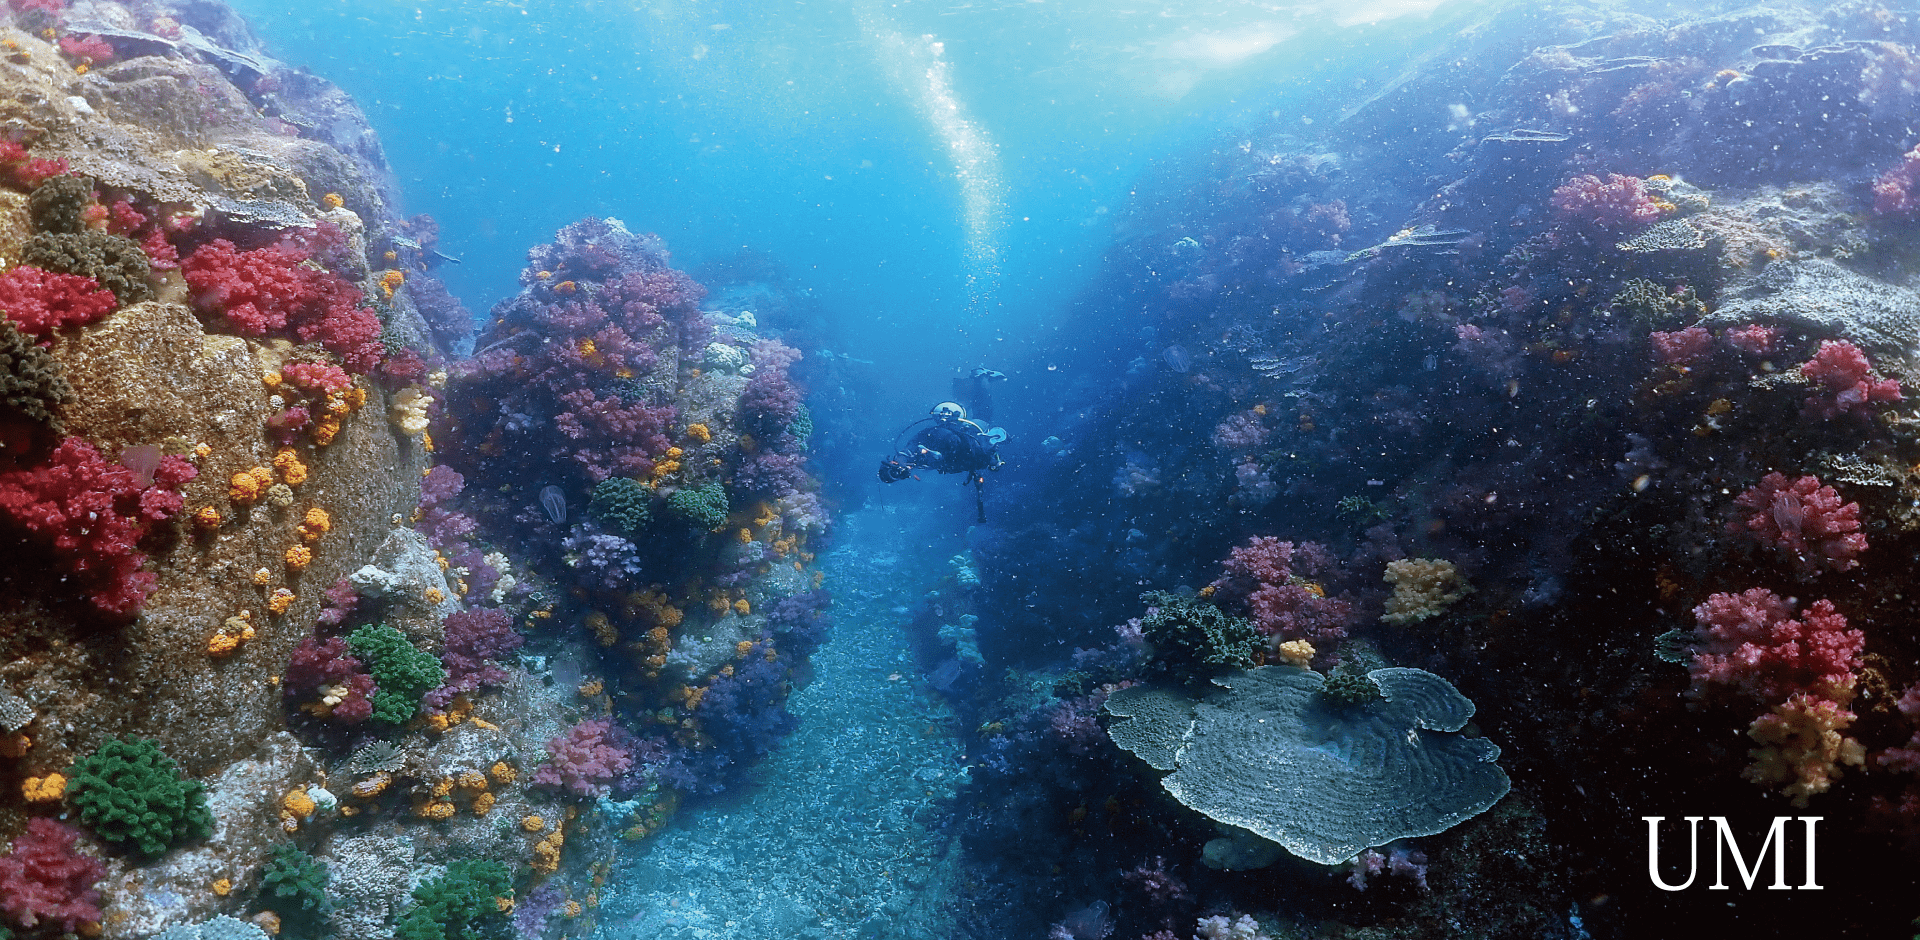 色鮮やかなサンゴ群生が左右の壁に広がる間を、一人のダイバーが泳いでいる。